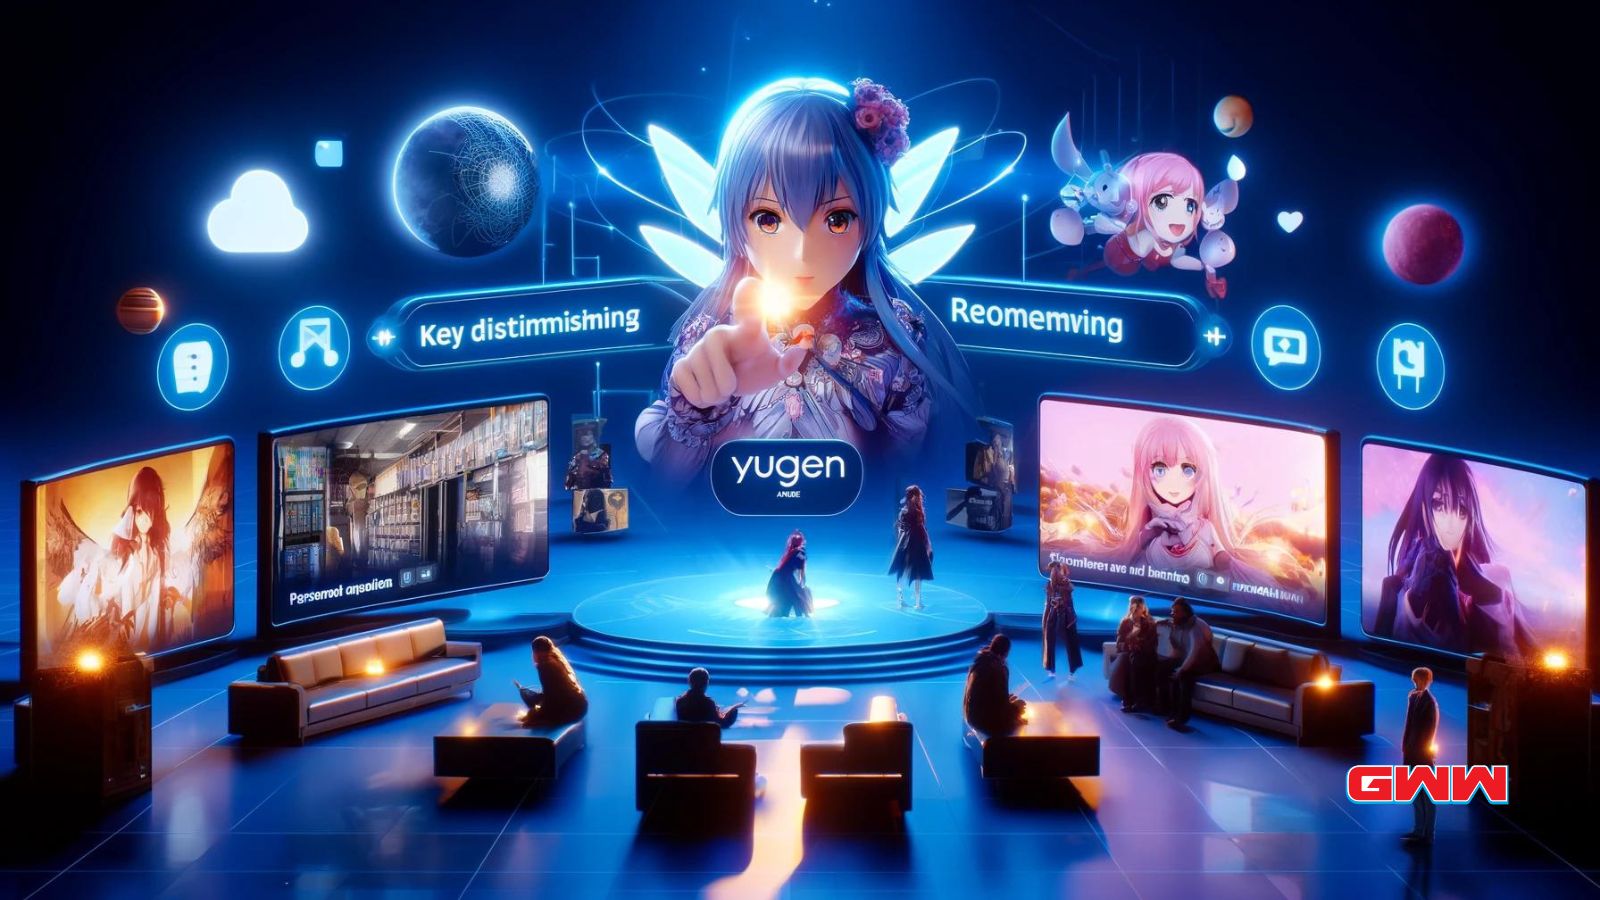 Una escena sorprendente que destaca lo que hace que Yugen Anime se destaque de otras plataformas.